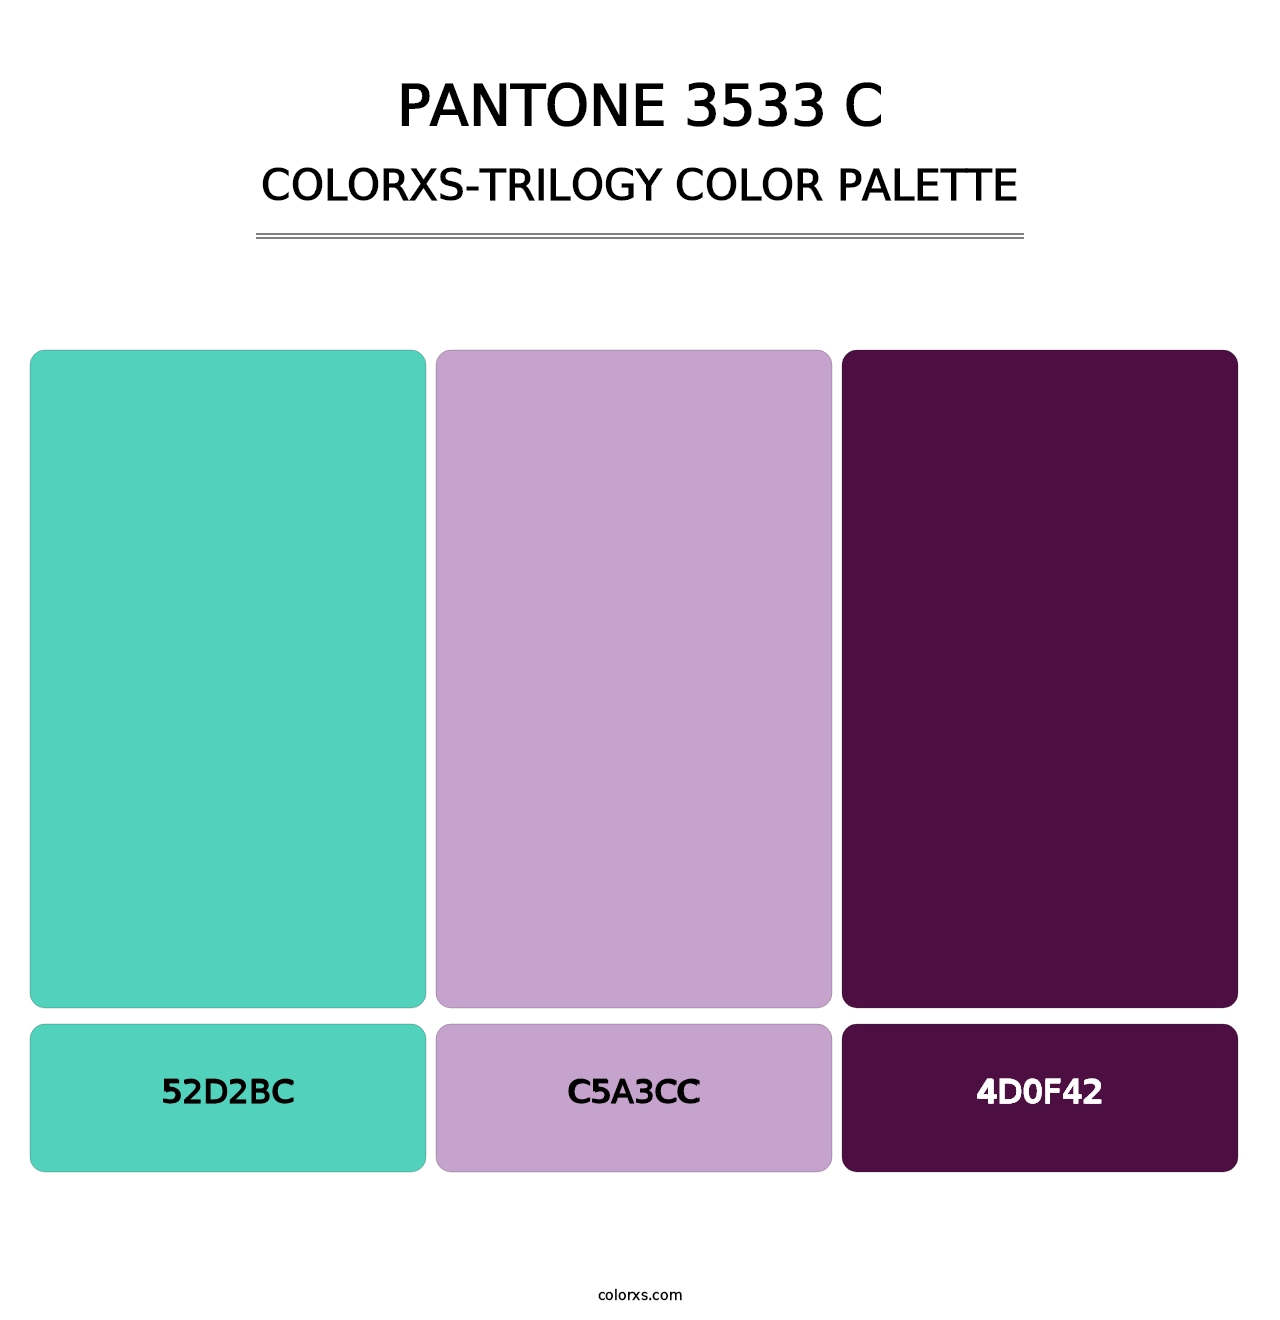 PANTONE 3533 C - Colorxs Trilogy Palette